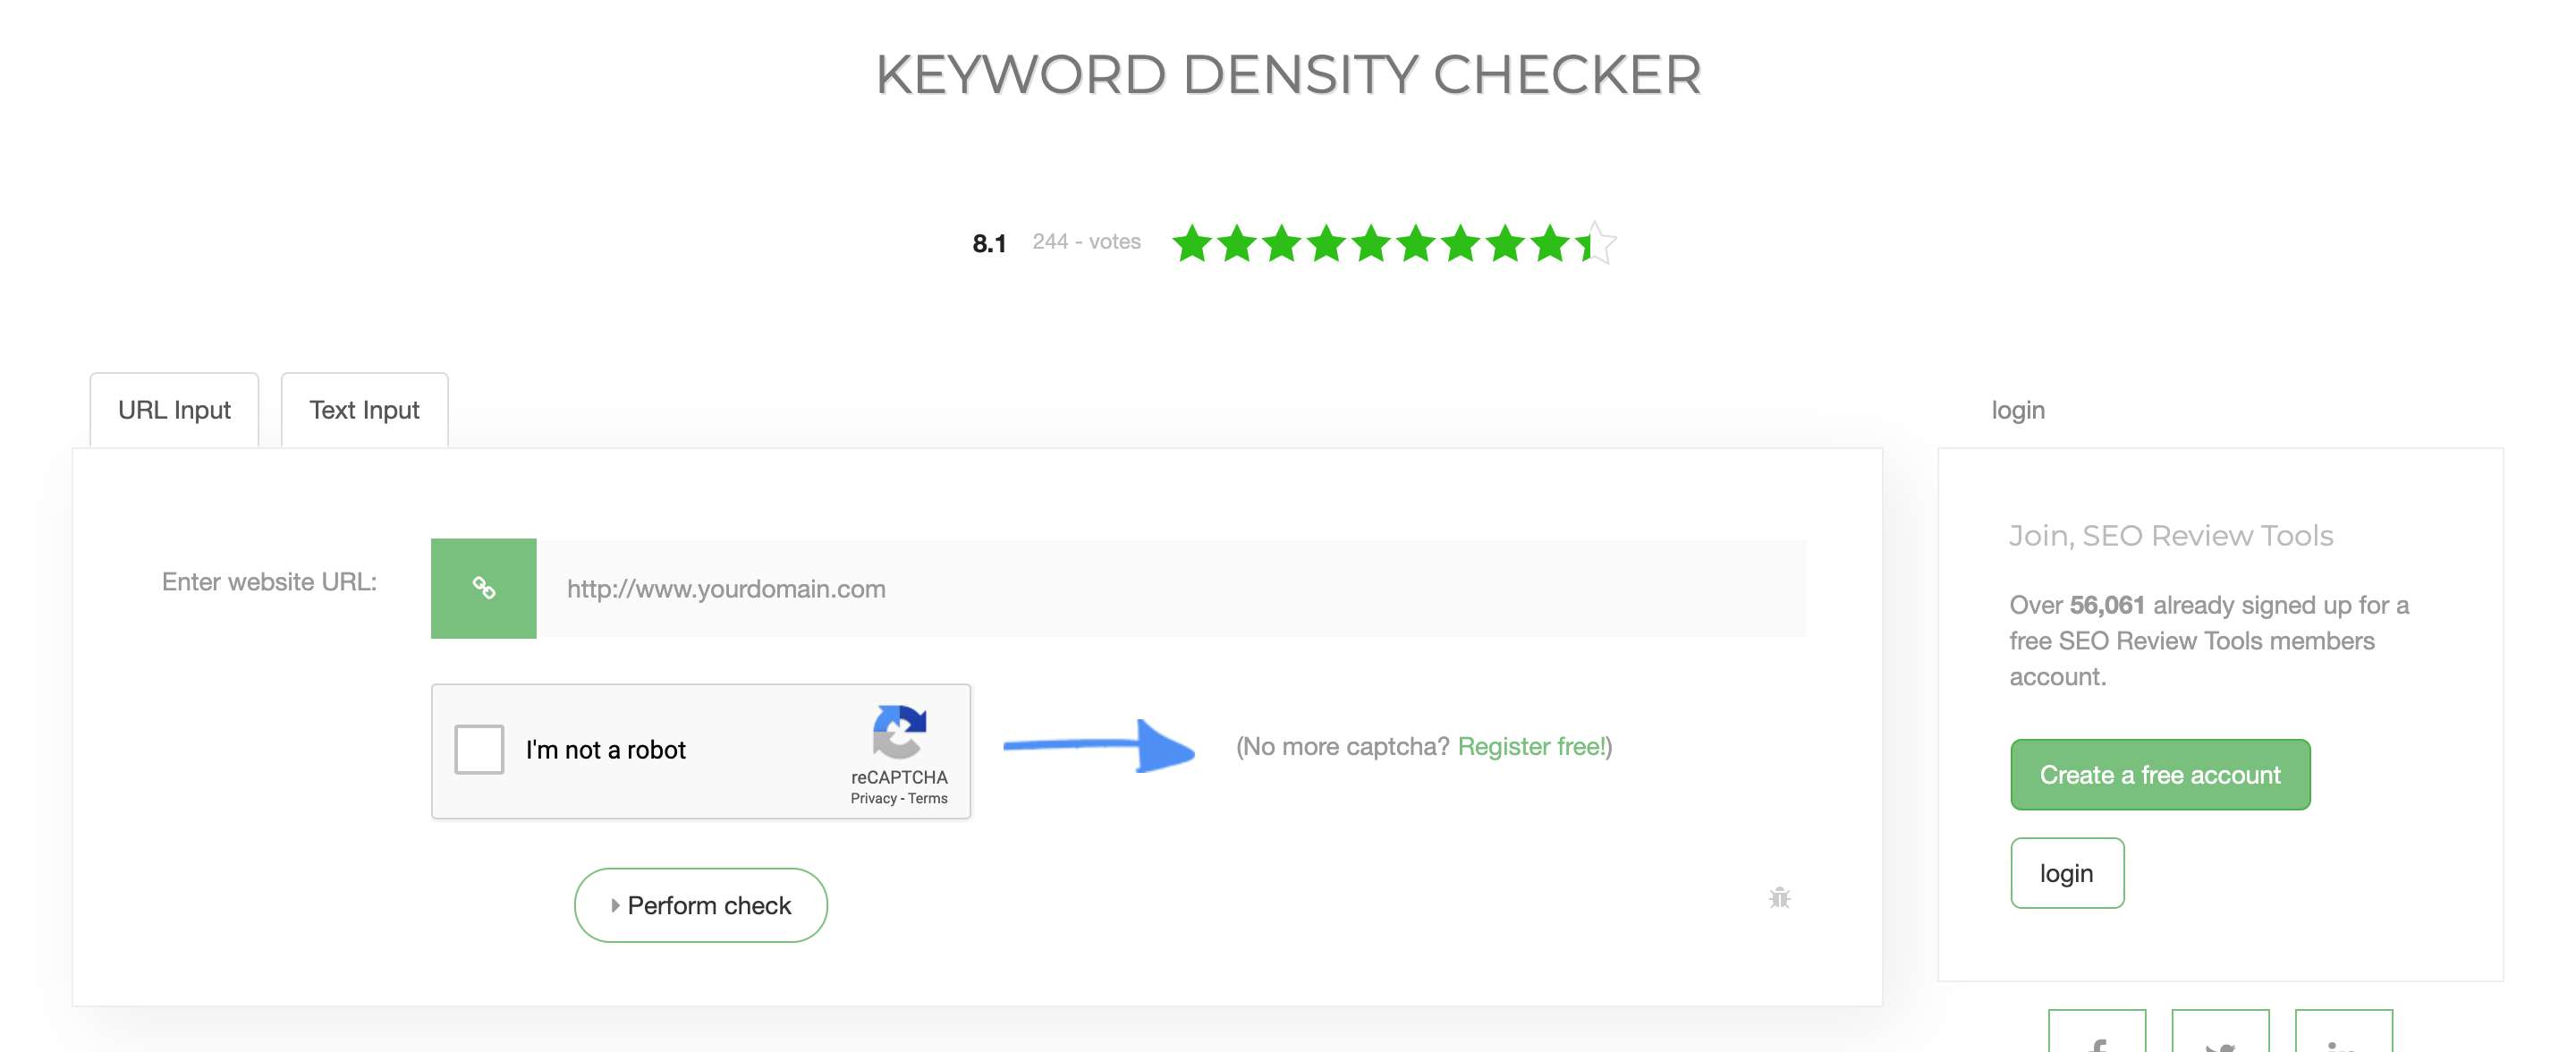 The Best 10 Tools To Measure Keyword Density In Seo